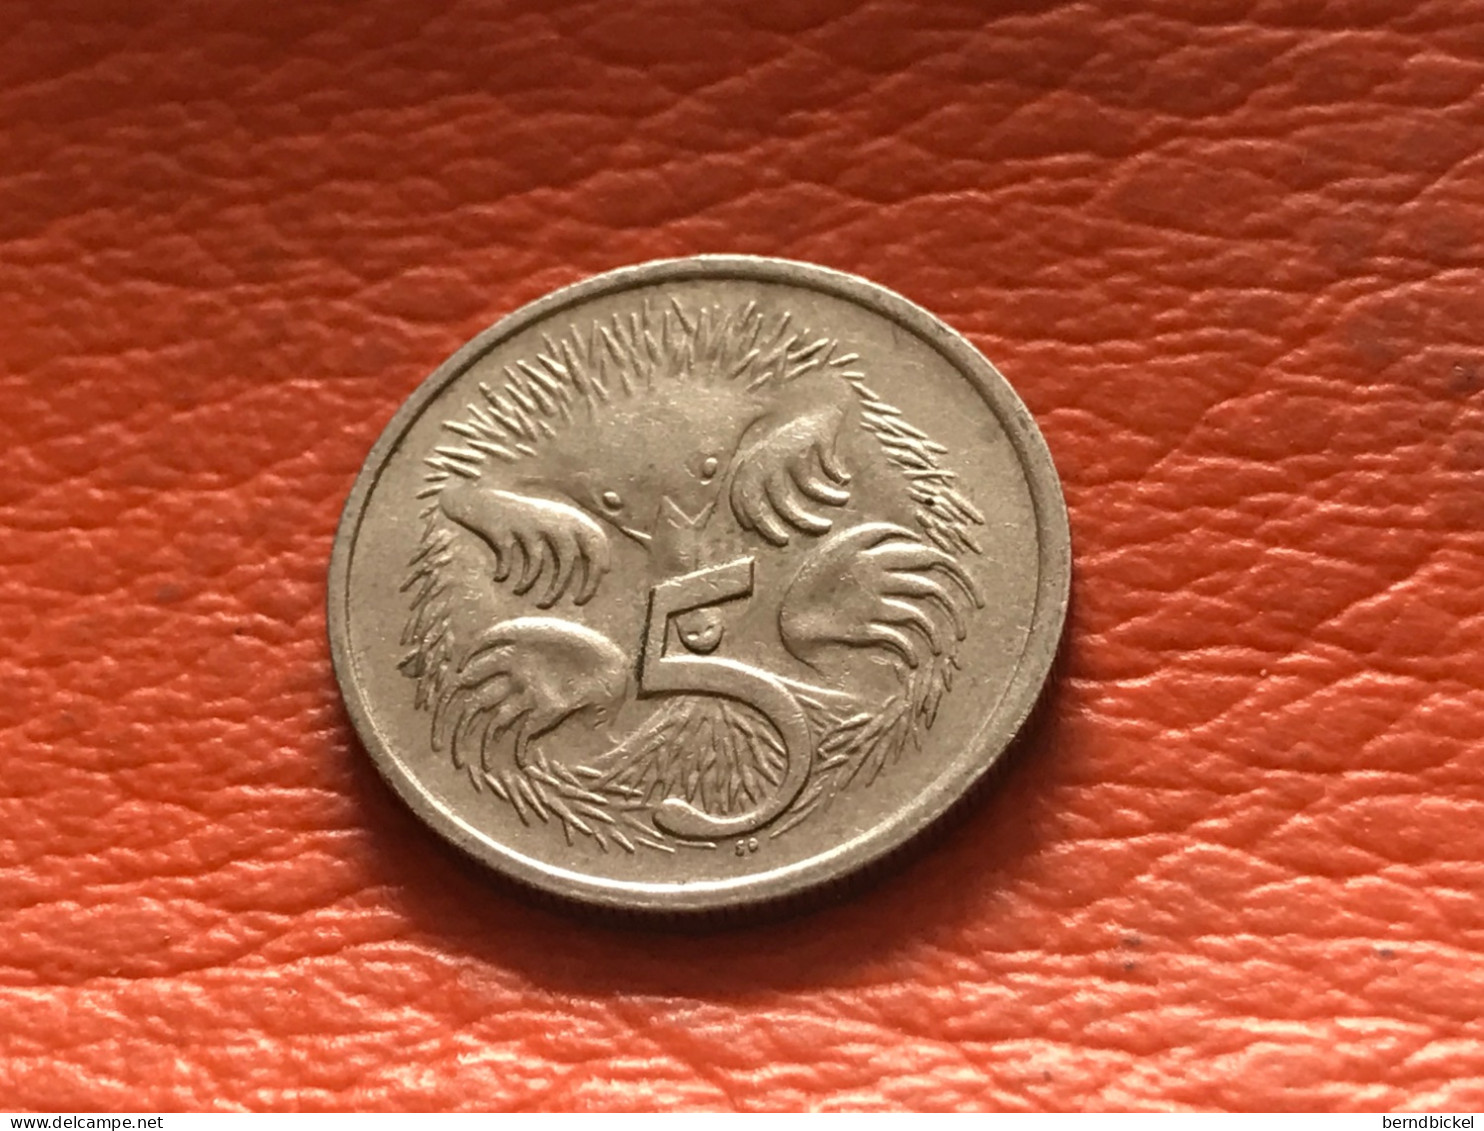 Münze Münzen Umlaufmünze Australien 5 Cent 1981 - 5 Cents